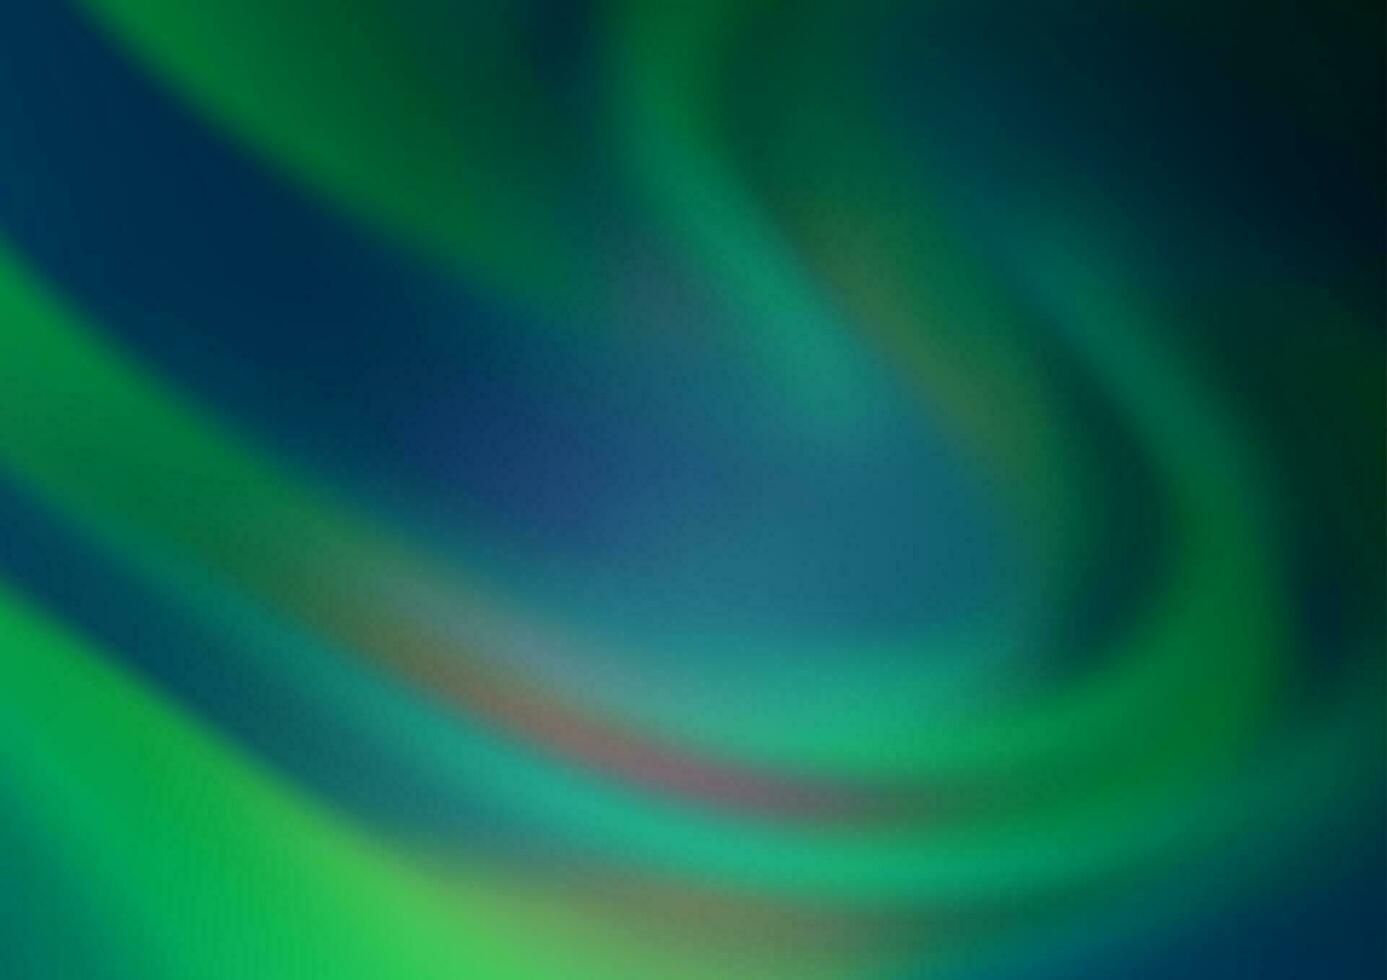 mörkblå, grön vektor abstrakt suddig bakgrund.